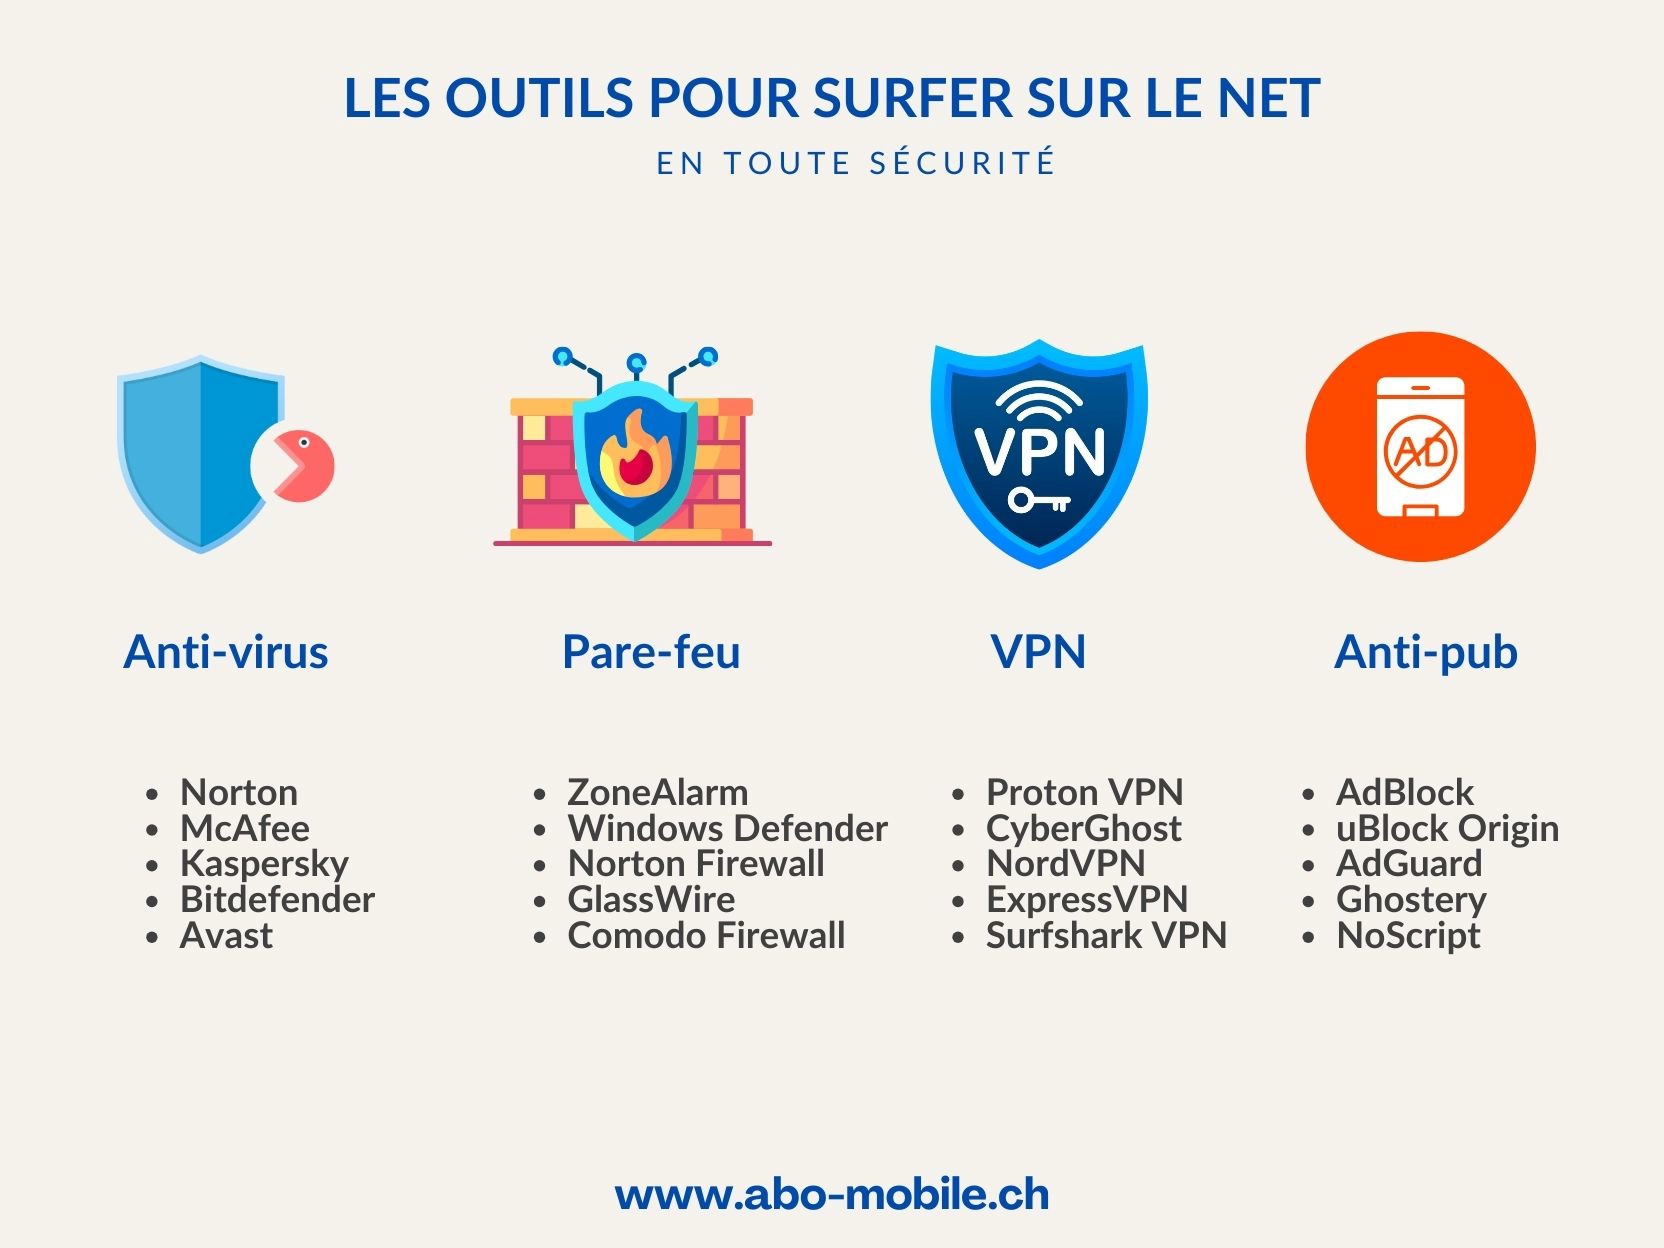 Les principaux logiciels de sécurité pour surfer sur internet.